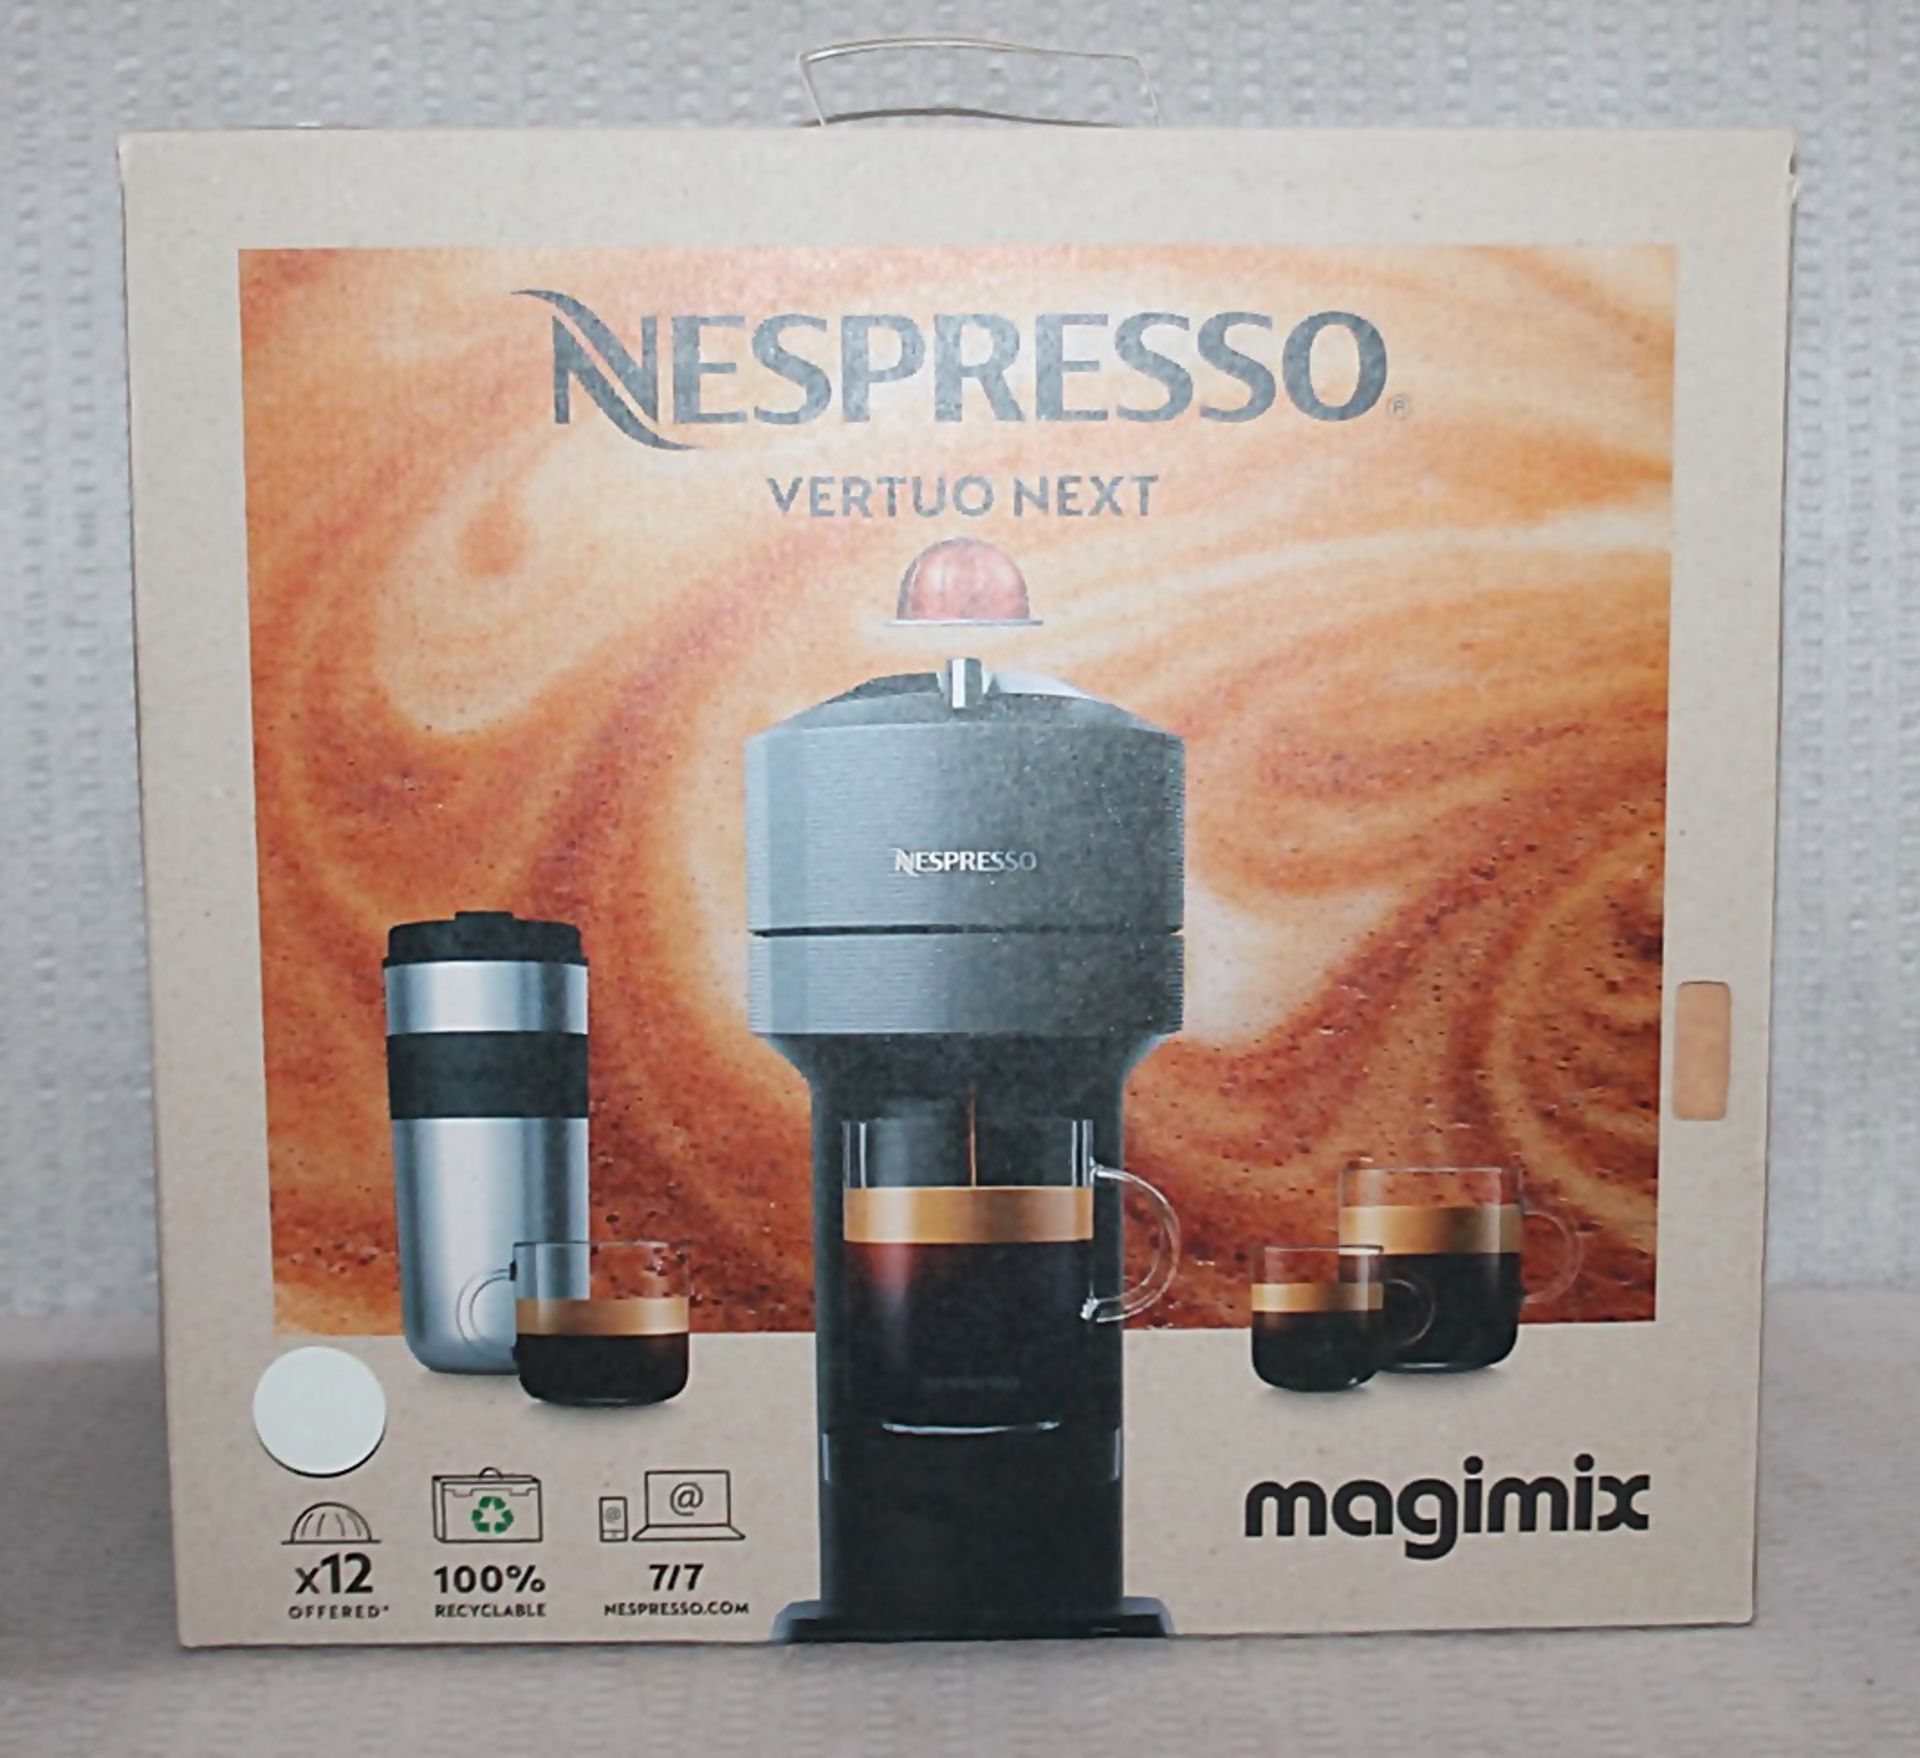 1 x Nespresso Vertuo Next Coffee Machine In White - Original Price £150.00 - Ref: 6698374/ - Image 2 of 11